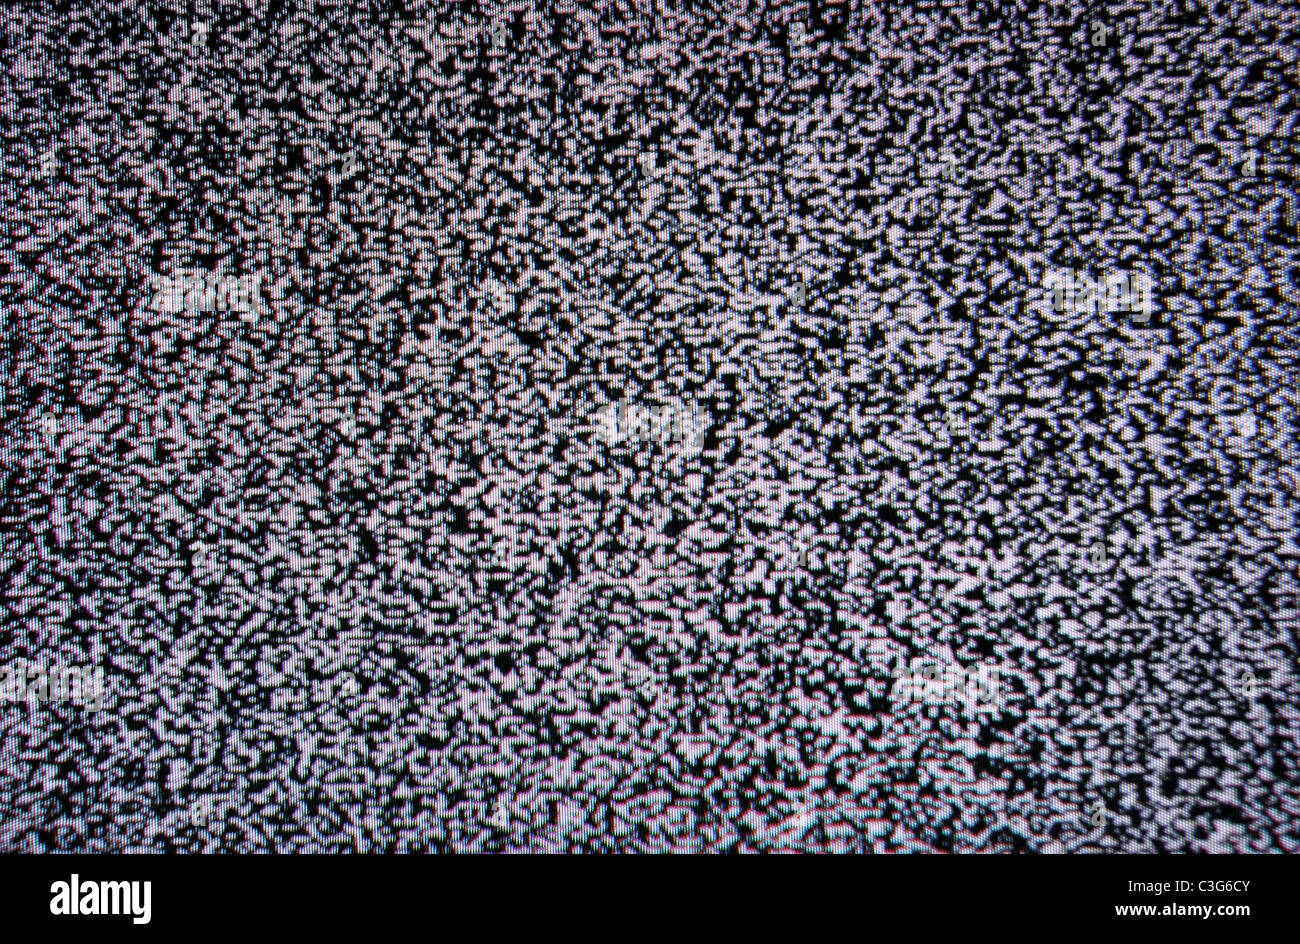 La pantalla del televisor en blanco y negro de textura de ruido de fondo de la trama Foto de stock